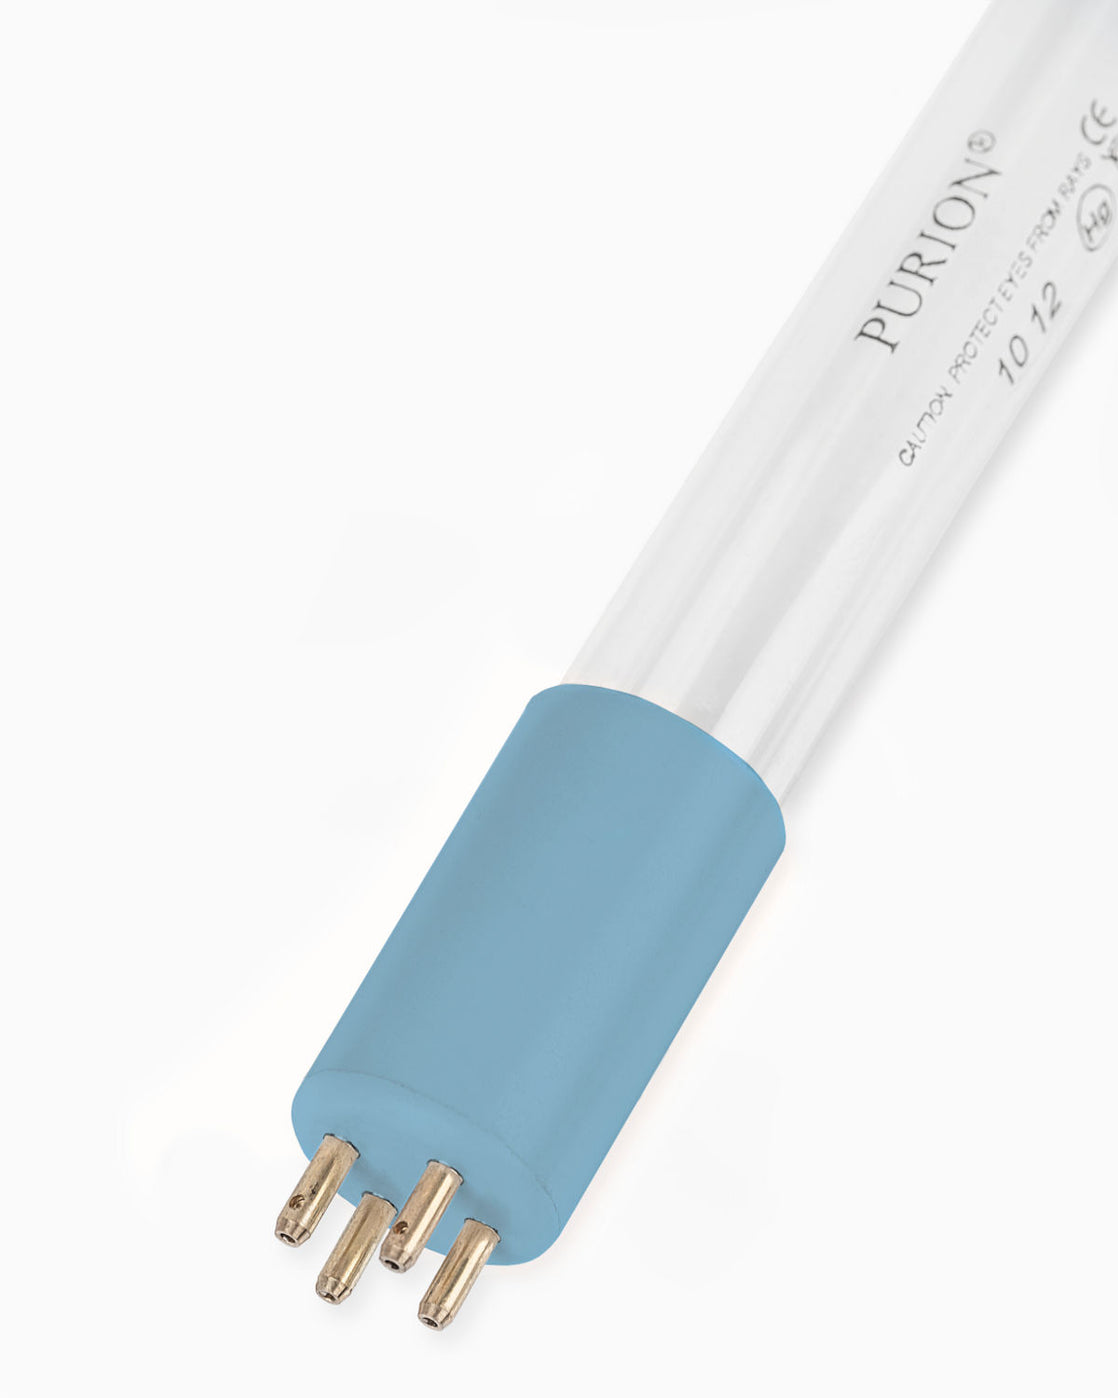 A UV Concept GmbH PURION 500 110 - 240 V AC Einfache blaue Lichtröhre auf weißem Hintergrund.